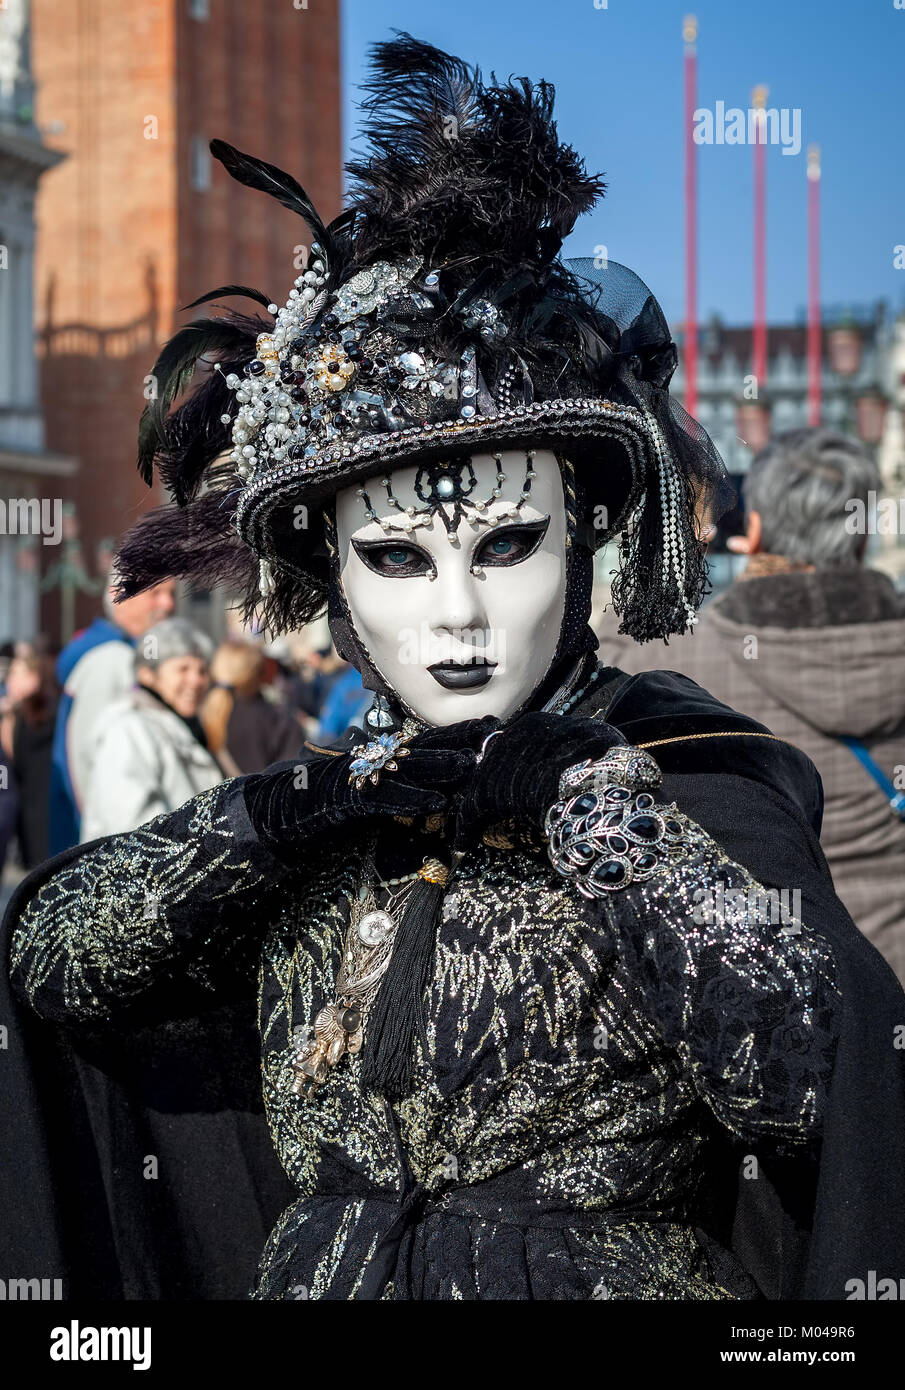 Venedig, Italien - 18. FEBRUAR 2017: vertikal orientierten Porträt einer unbekannten Frau tragen Vintage schwarz Kostüm, Handschuhe, Mütze und weiße Maske. Stockfoto